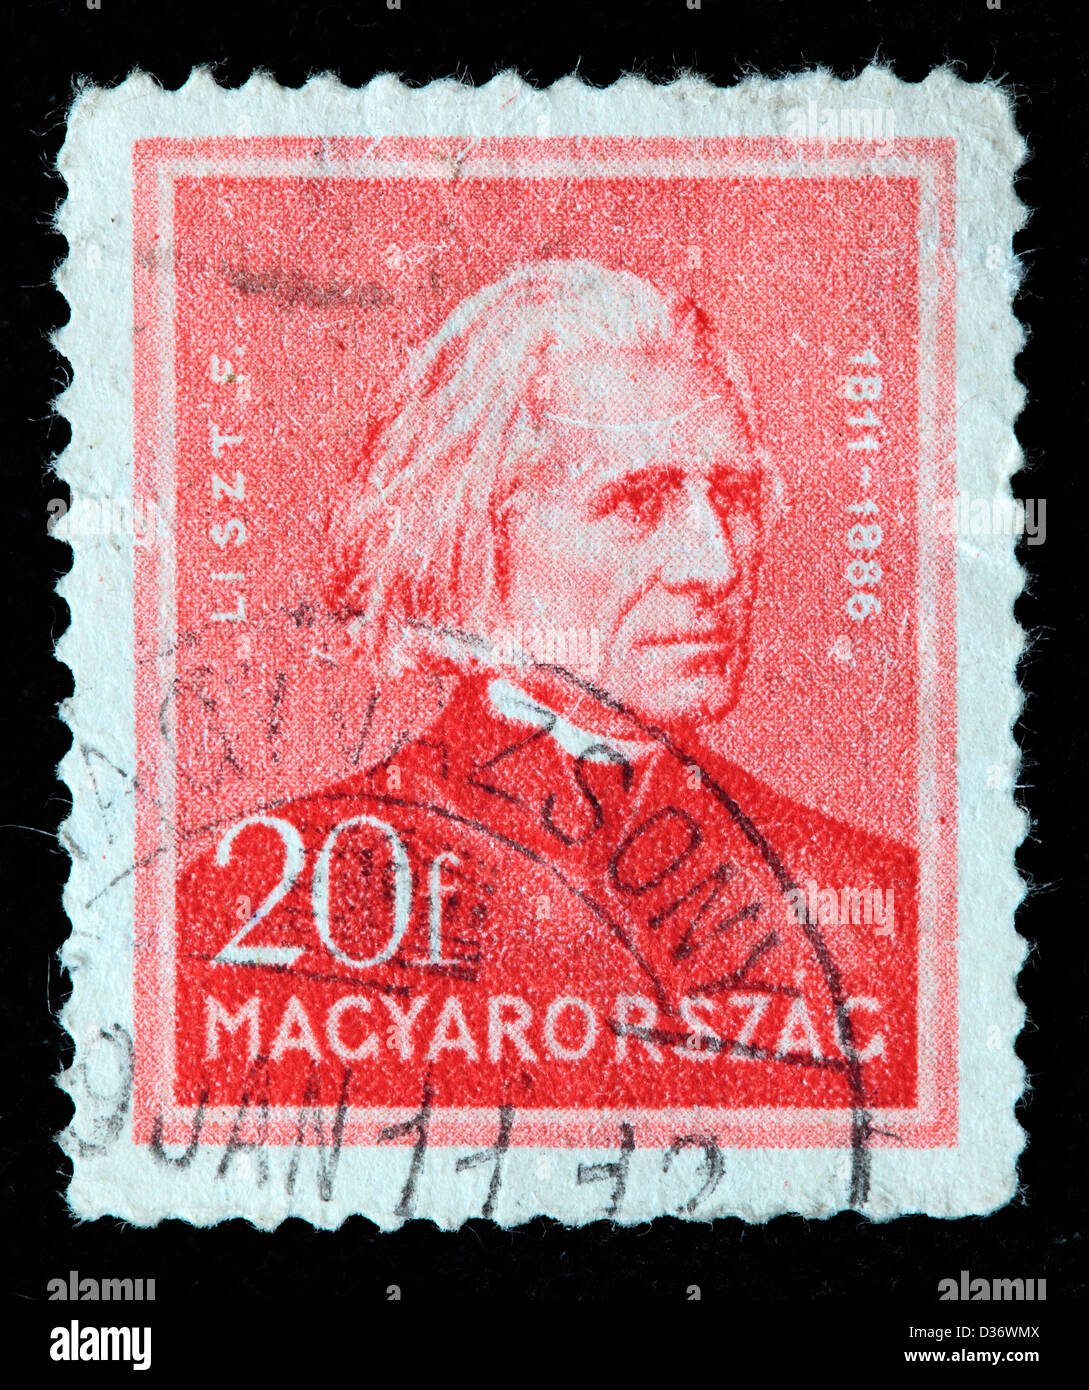 Franz Liszt, compositor, sello, Hungría, 1932 Foto de stock